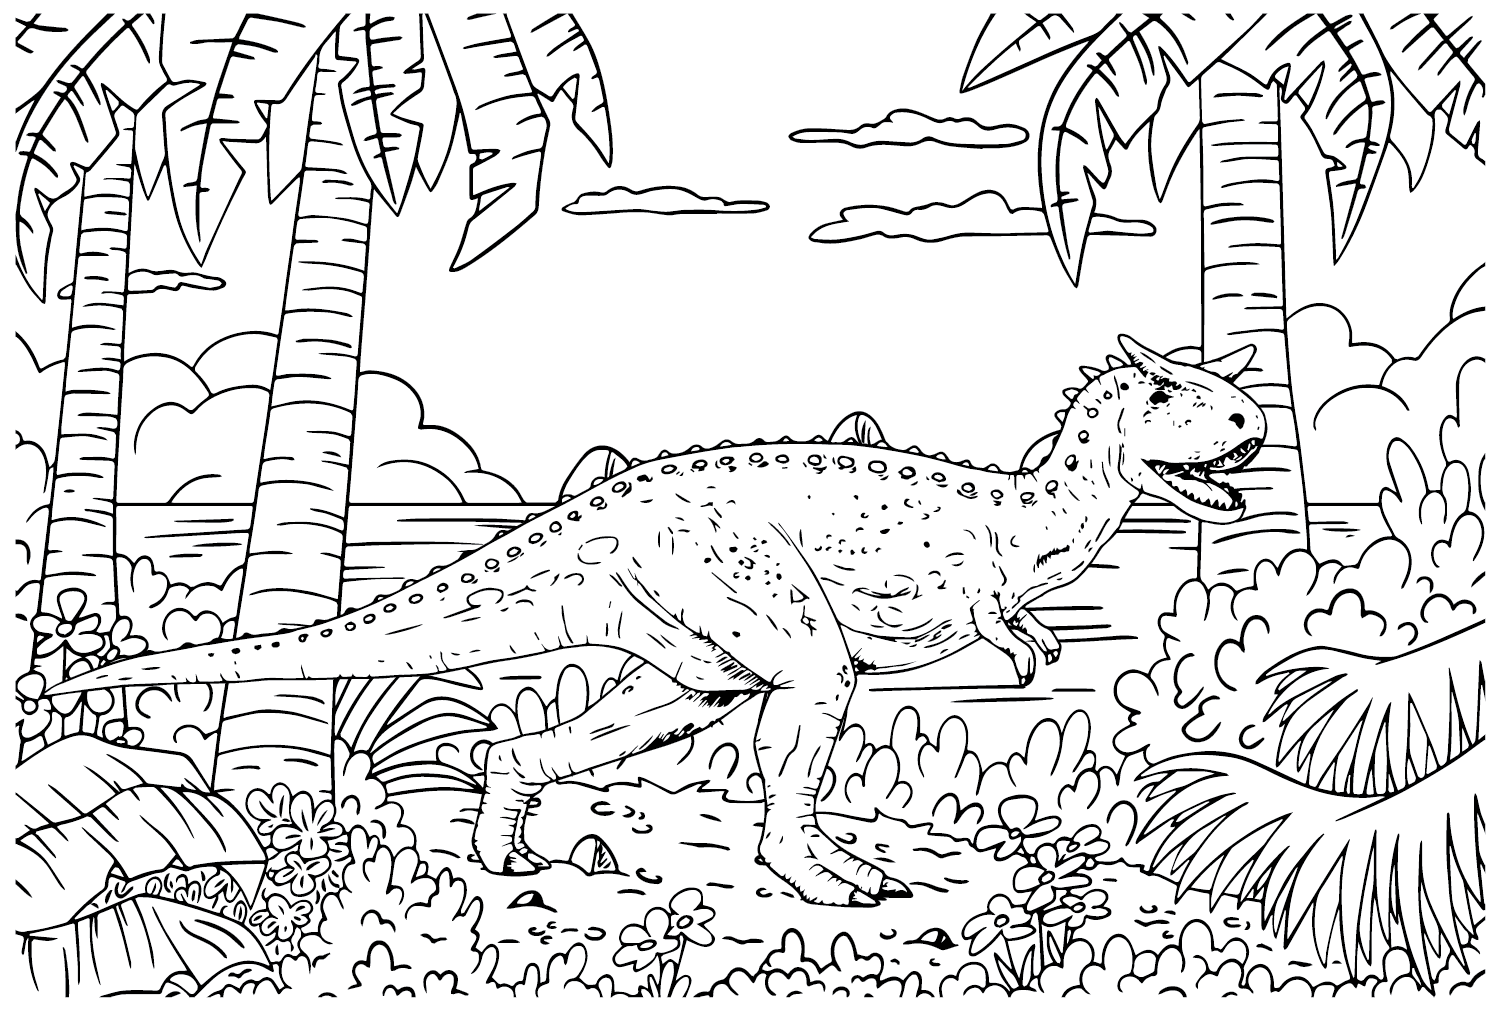 Carnotaurus-Malblatt von Carnotaurus